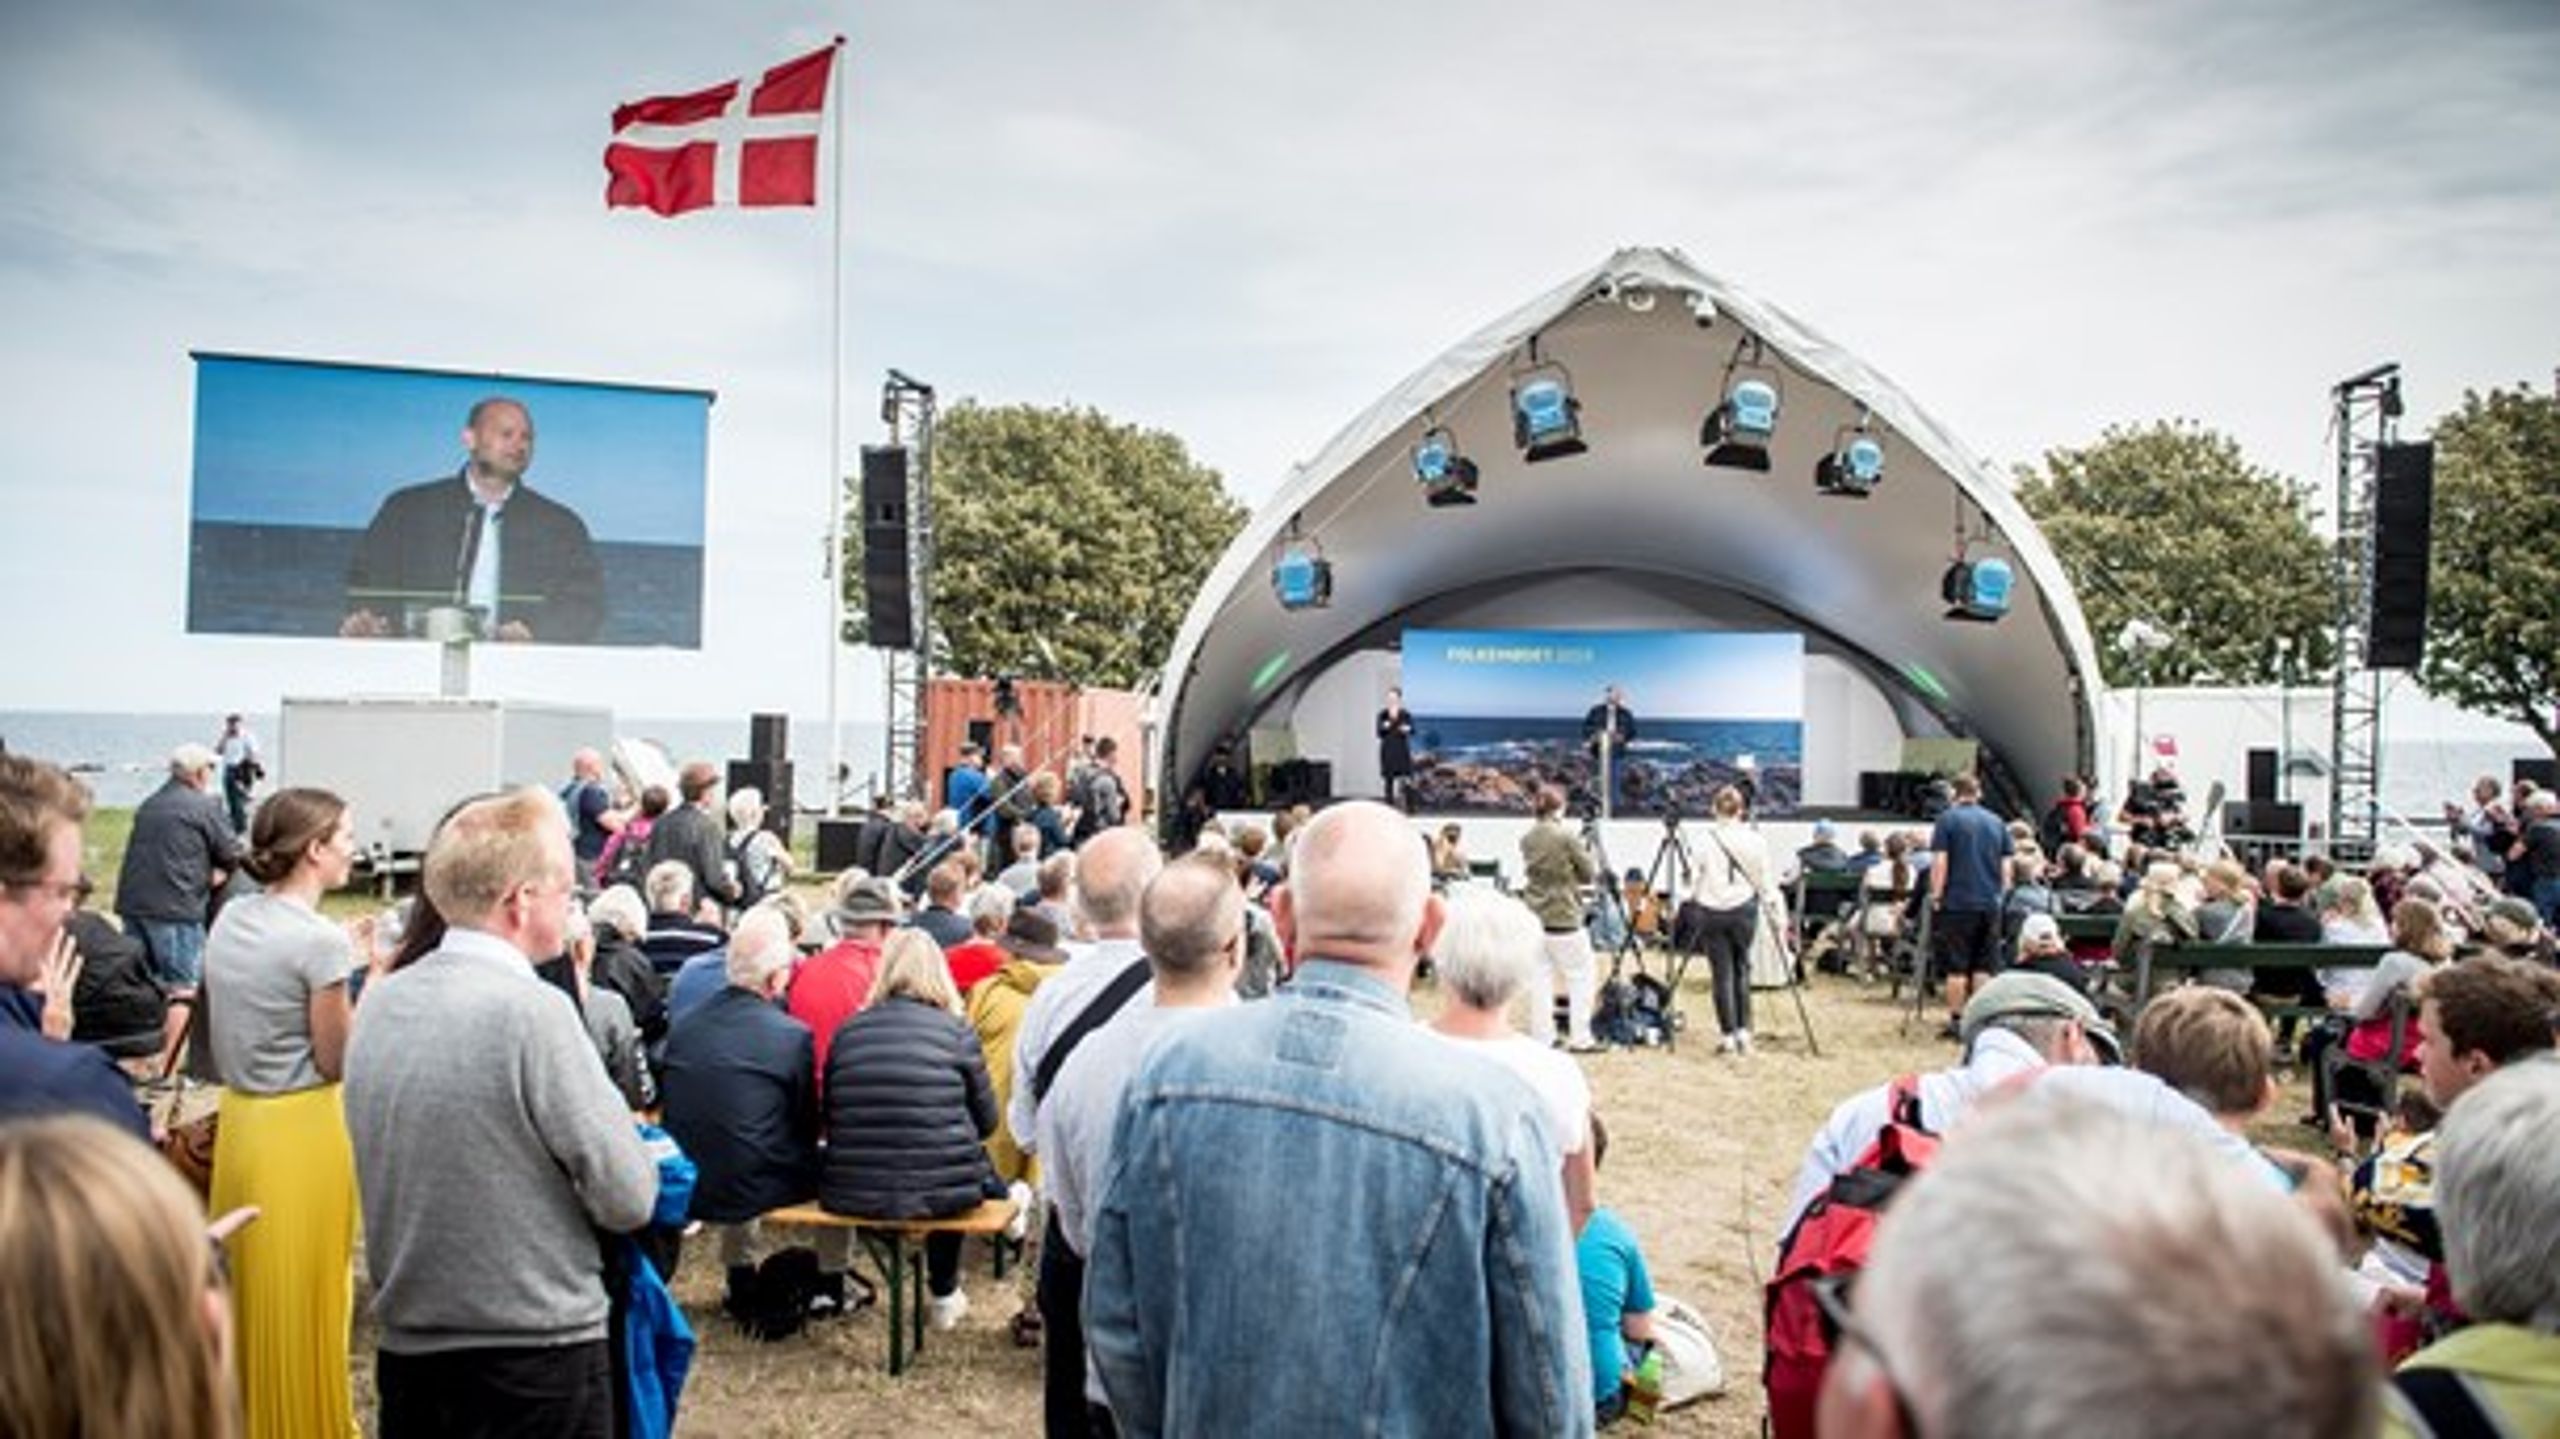 Folkemødets hovedscene på cirkuspladsen i Allinge vil fortsat være central - også i en mere digital udgave af Folkemødet.